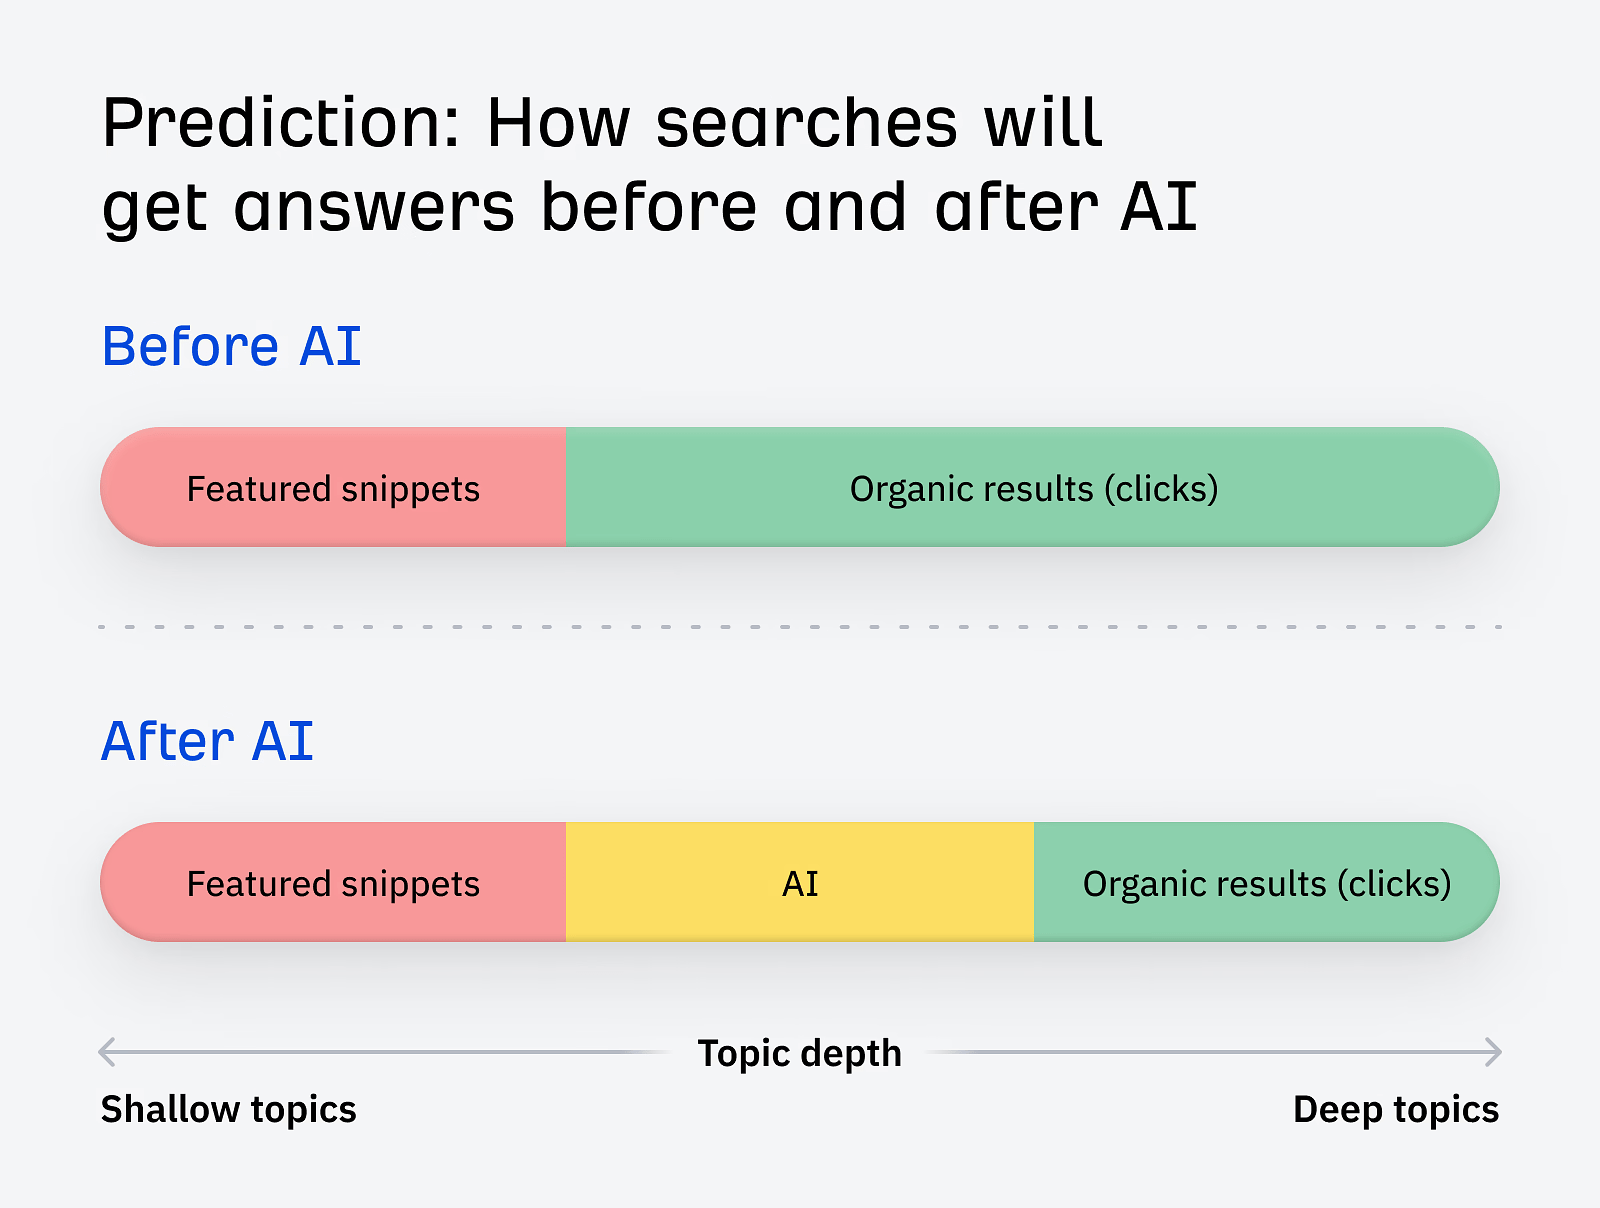 Ma prédiction est que les clics sur des sujets superficiels seront dirigés vers l’IA à l’avenir.  La seule façon de pérenniser votre référencement est d’aborder des sujets profonds